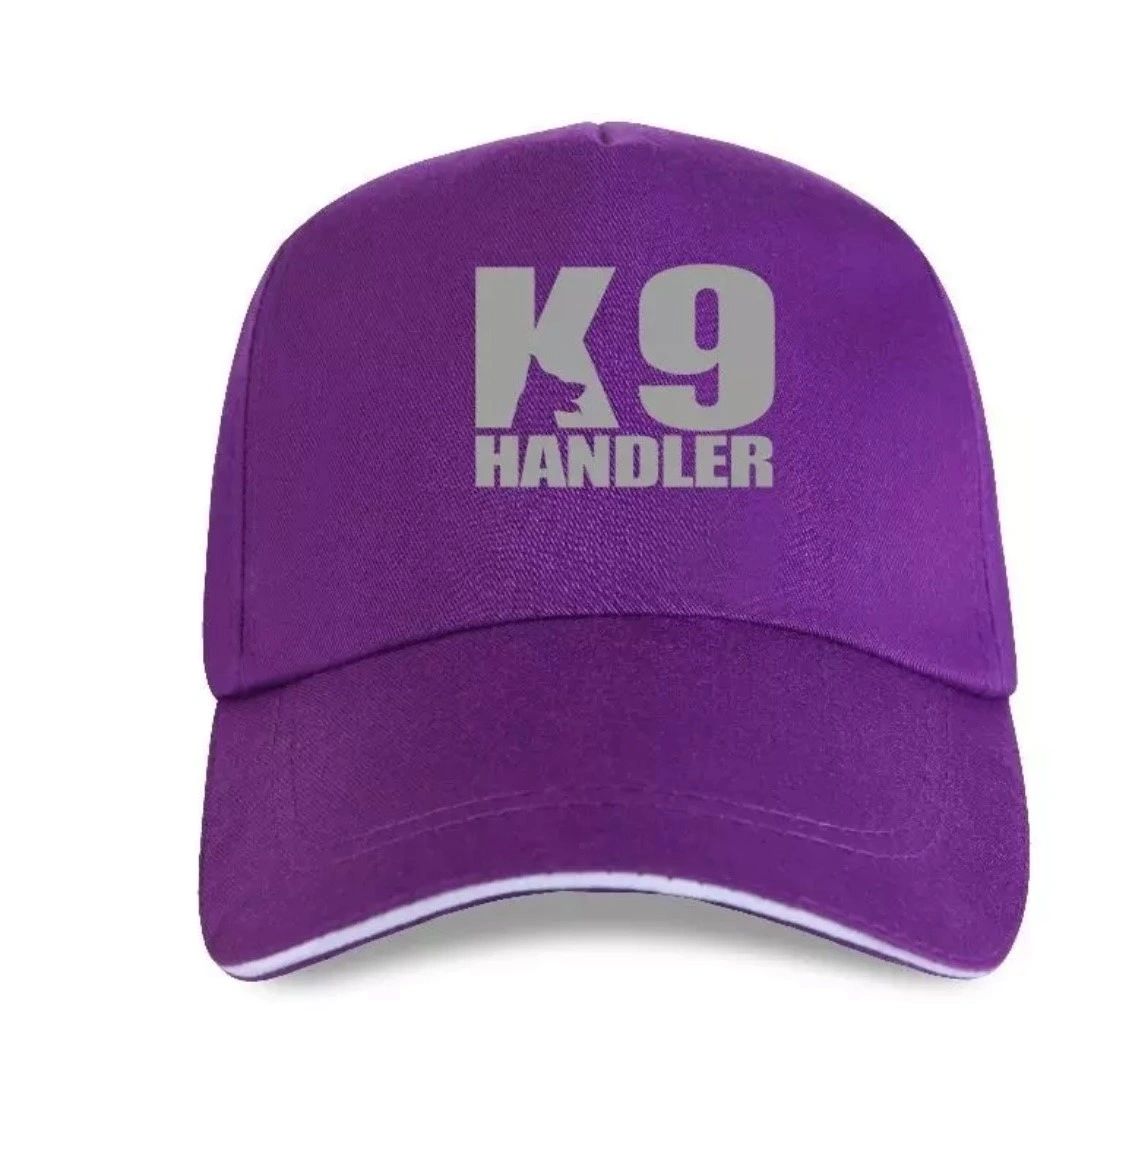 K9 Handler Caps